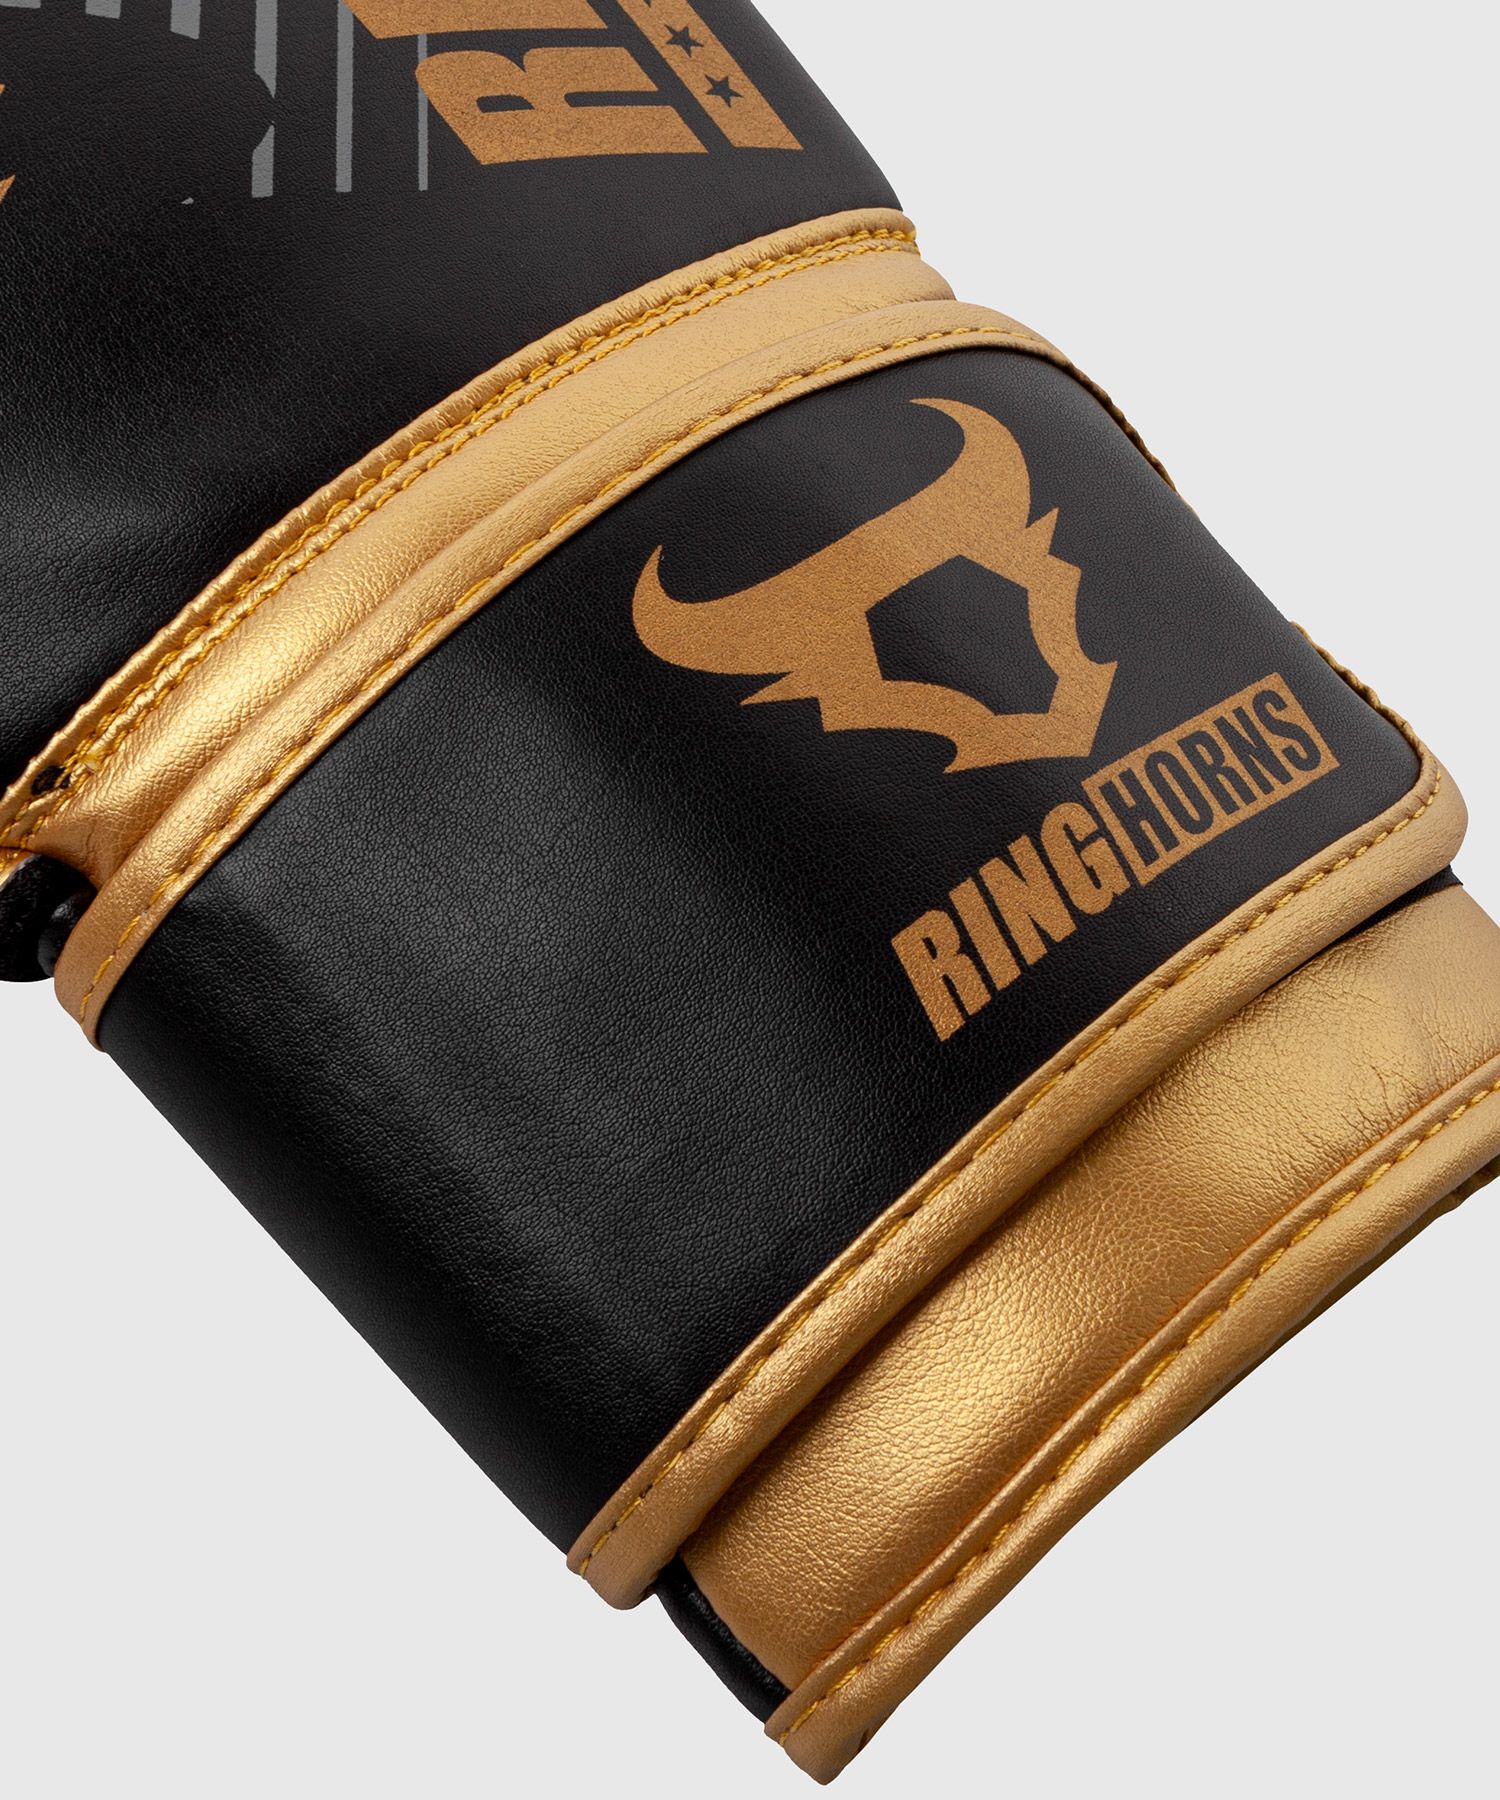 Перчатки Ringhorns Charger MX Boxing Gloves 14 унций